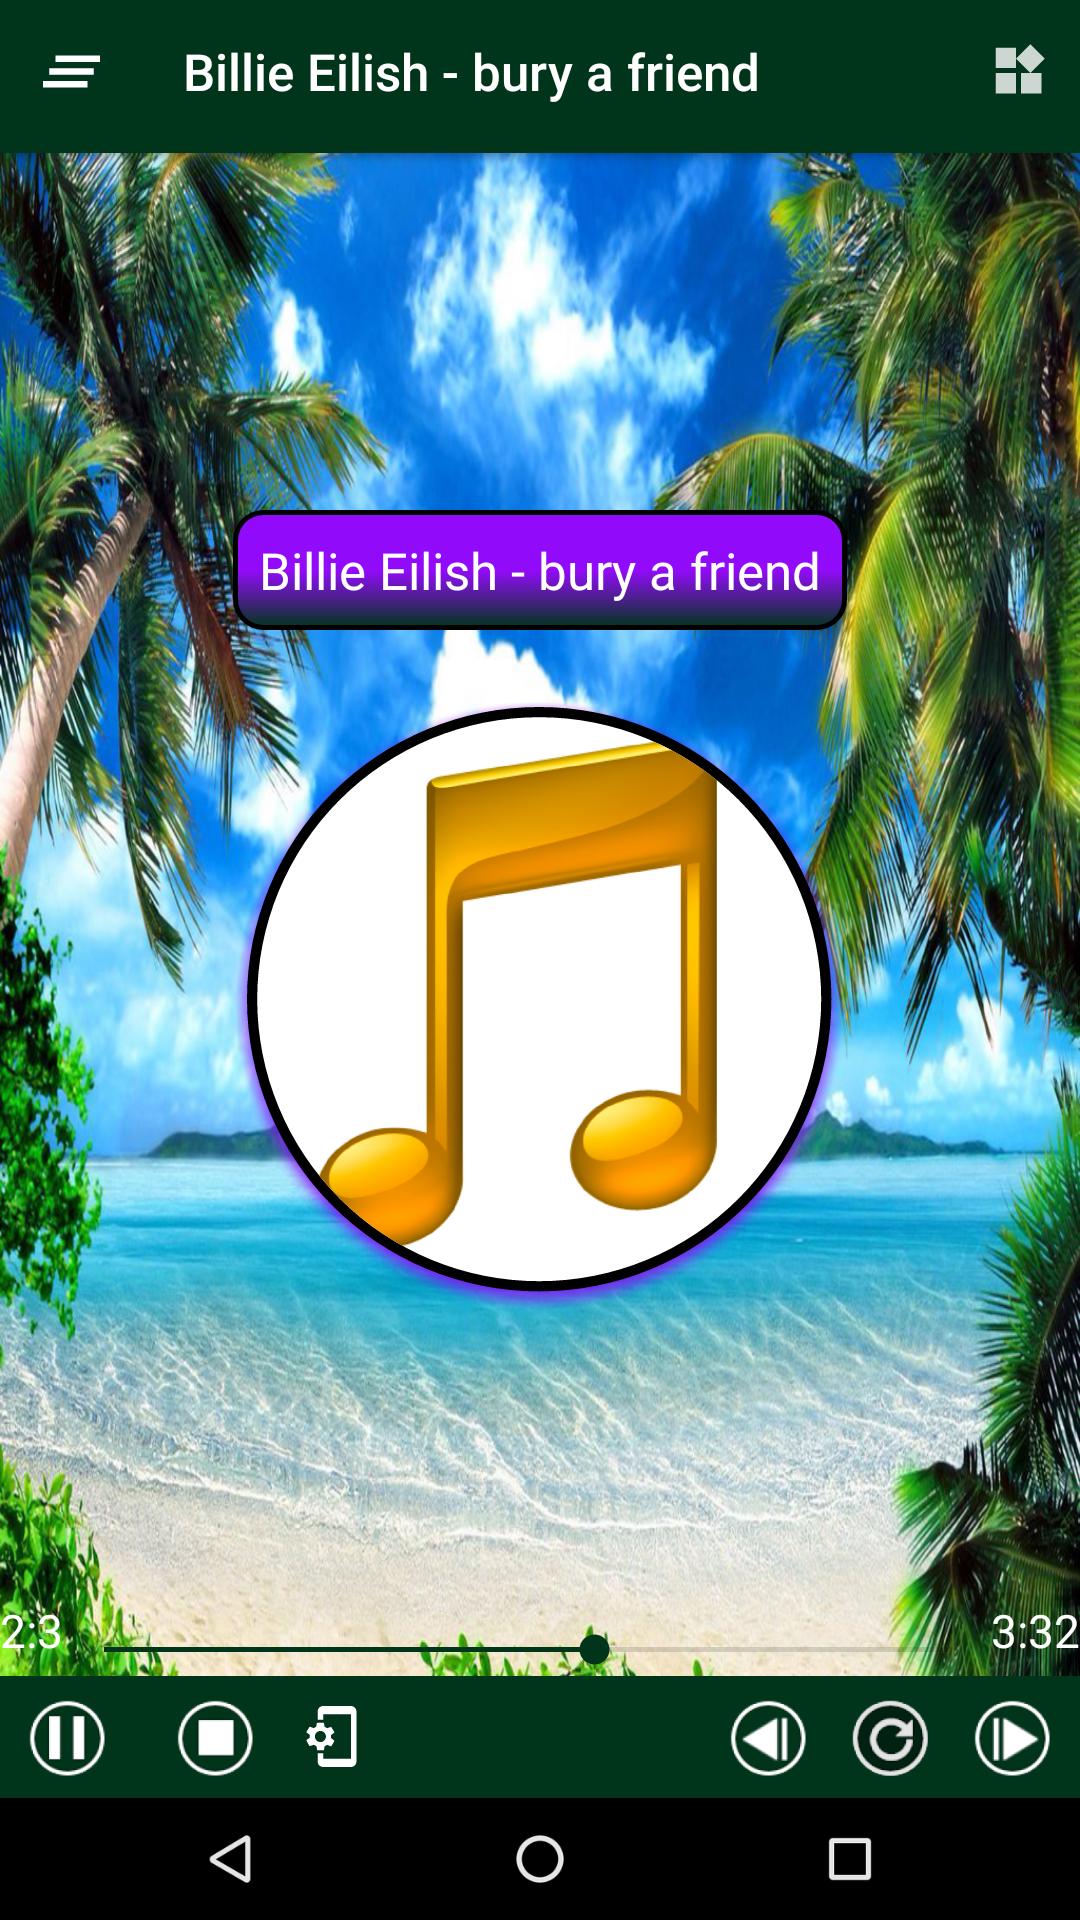 Billie Eilish Best Music Album Offline For Android Apk Download - bury a friend billie eilish roblox music video dance video